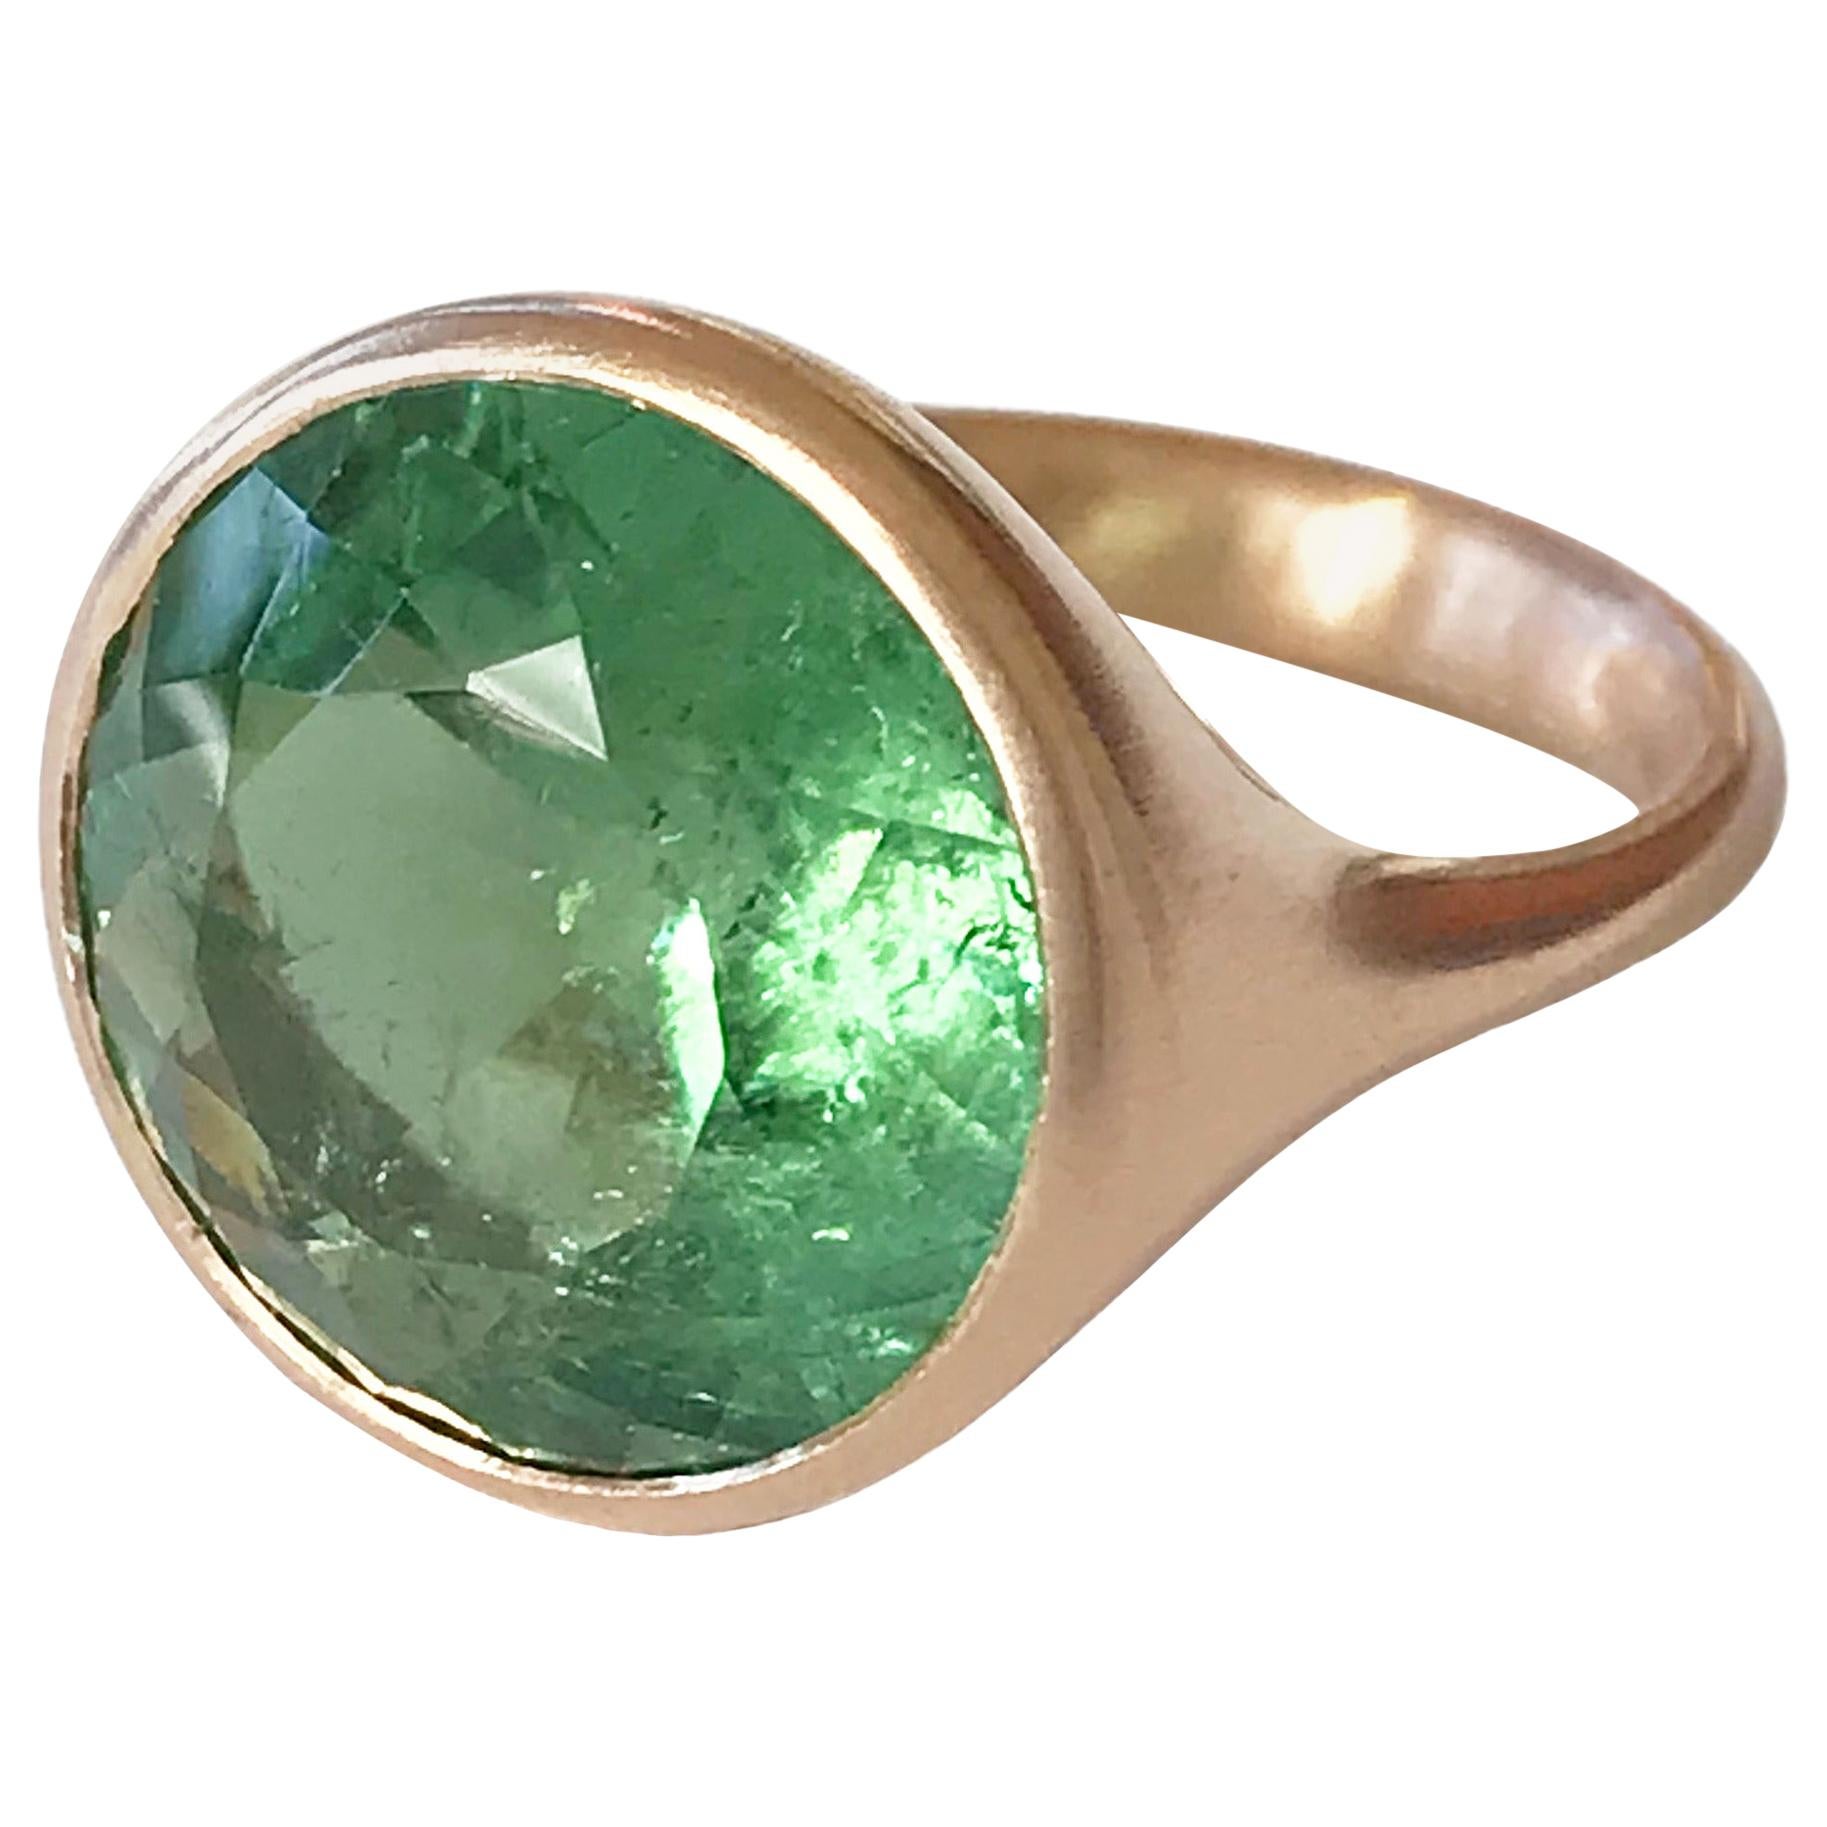 Dalben Design Round Green Tourmaline Rose Gold Ring